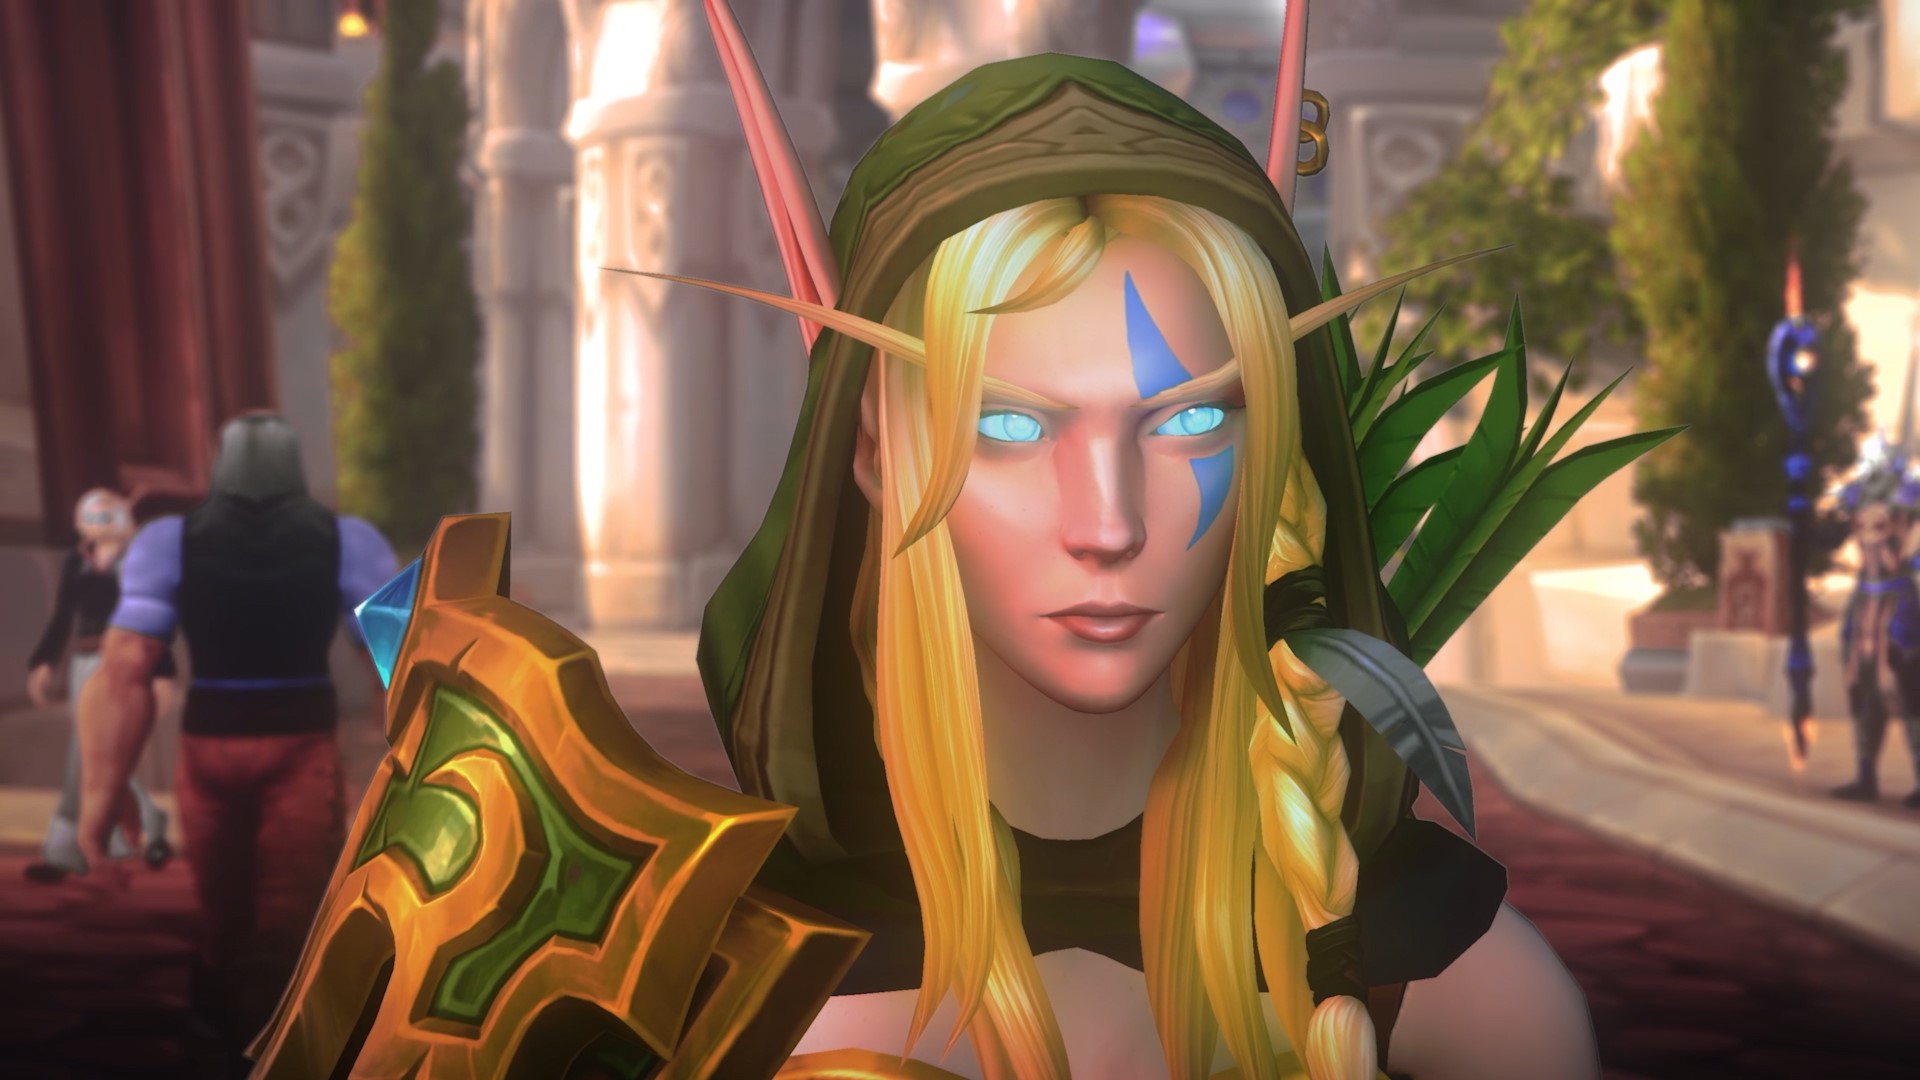 Выпуск World of Warcraft для Xbox все еще остается «мечтой», говорит исполнительный продюсер